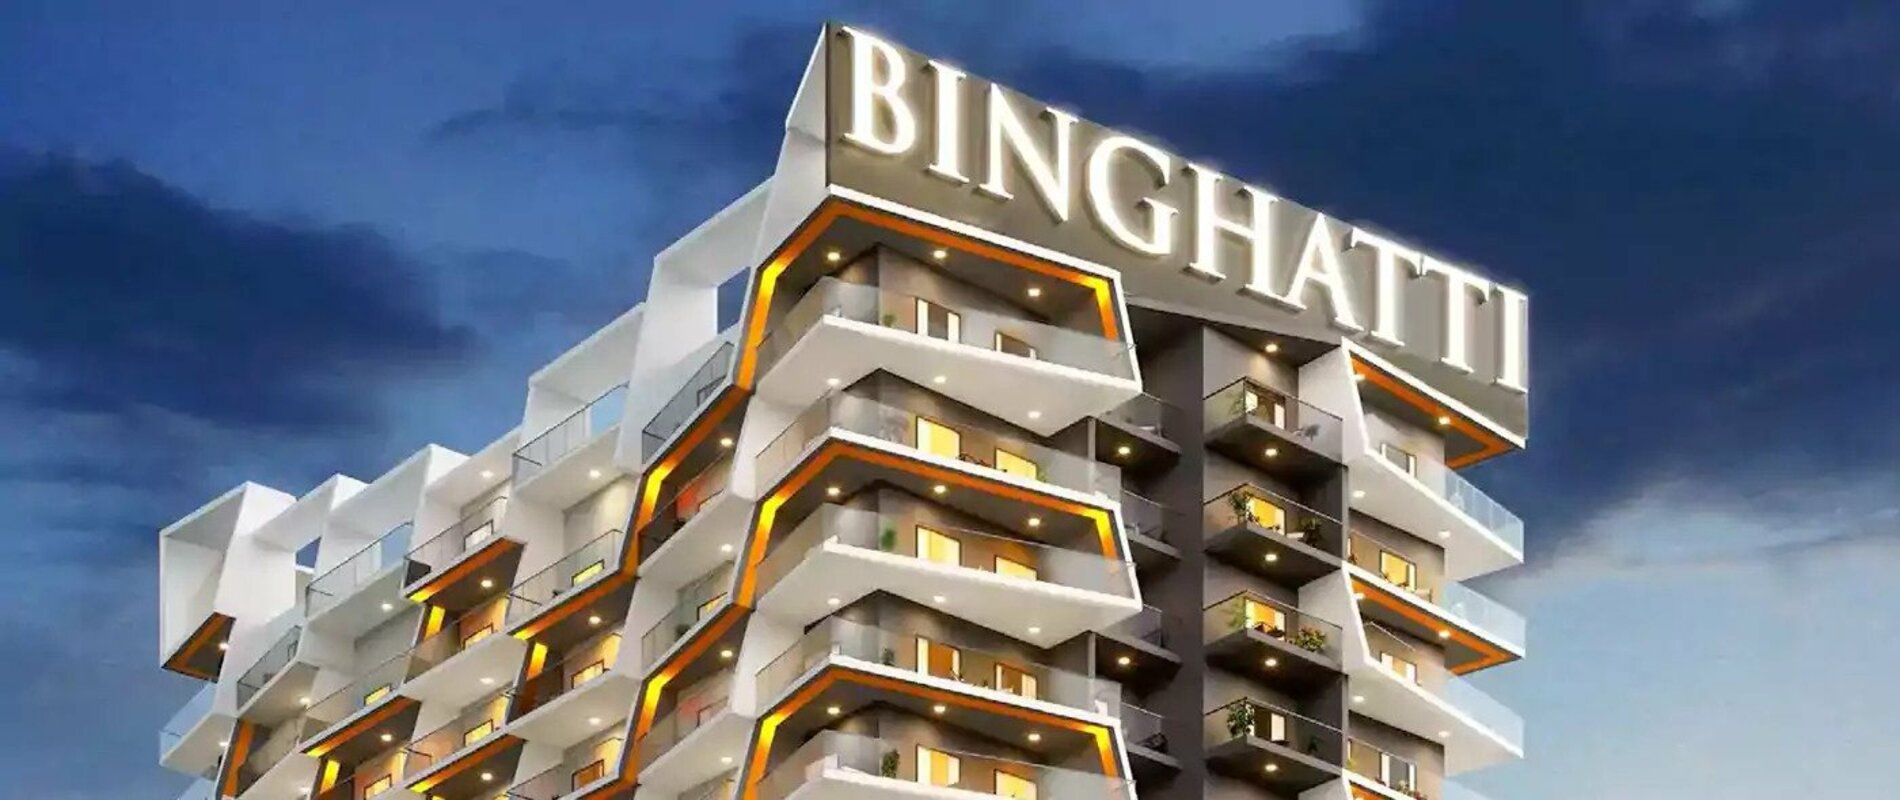 Binghatti Heights Apartments - Jumeirah Village Circle Dubai.